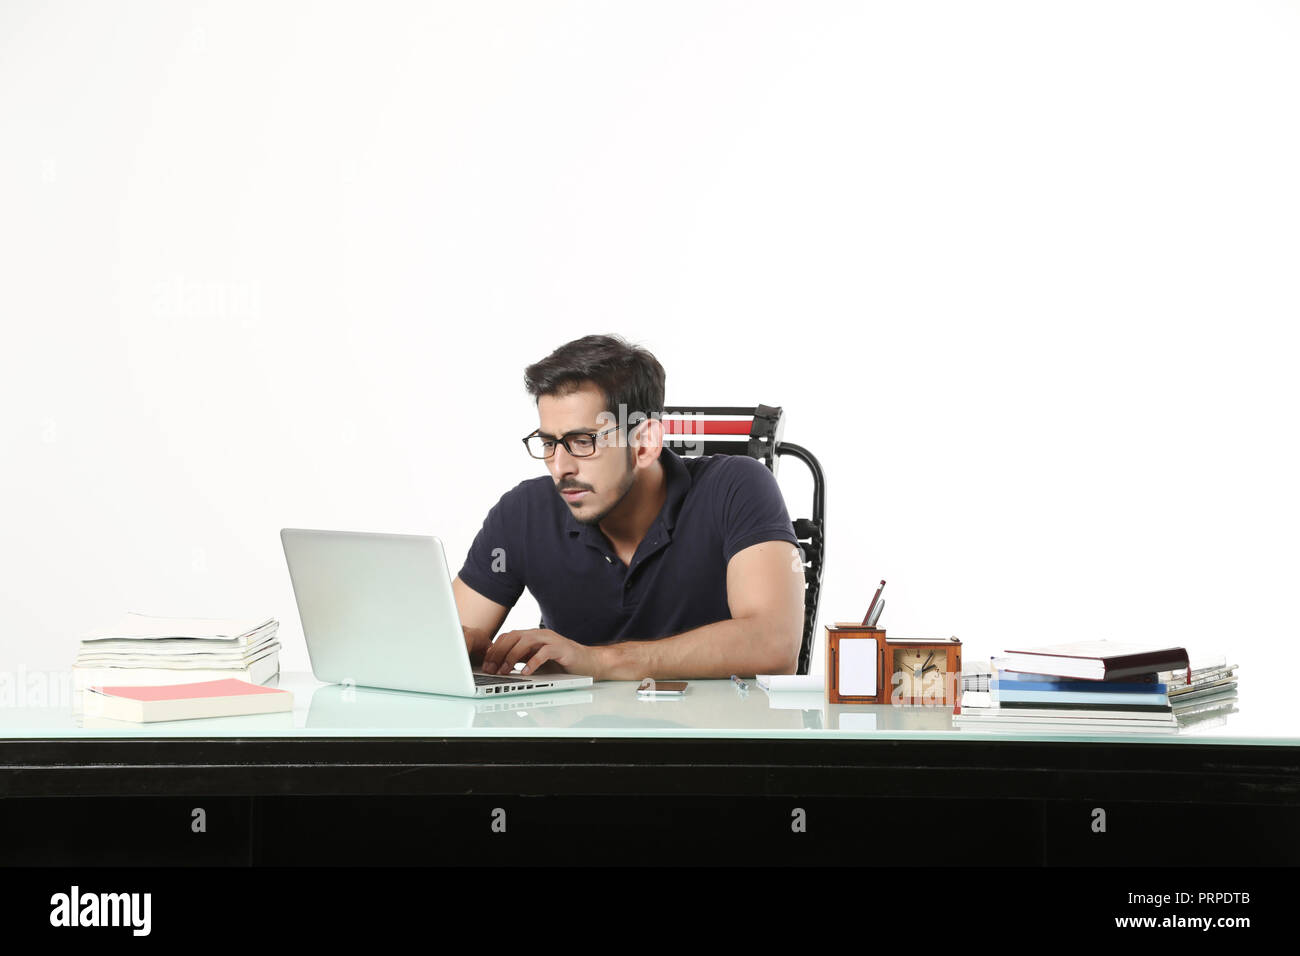 L'homme d'affaires travaille sur un ordinateur portable avec le port de lunettes noires dans la cabine. Isolé sur fond blanc. Banque D'Images